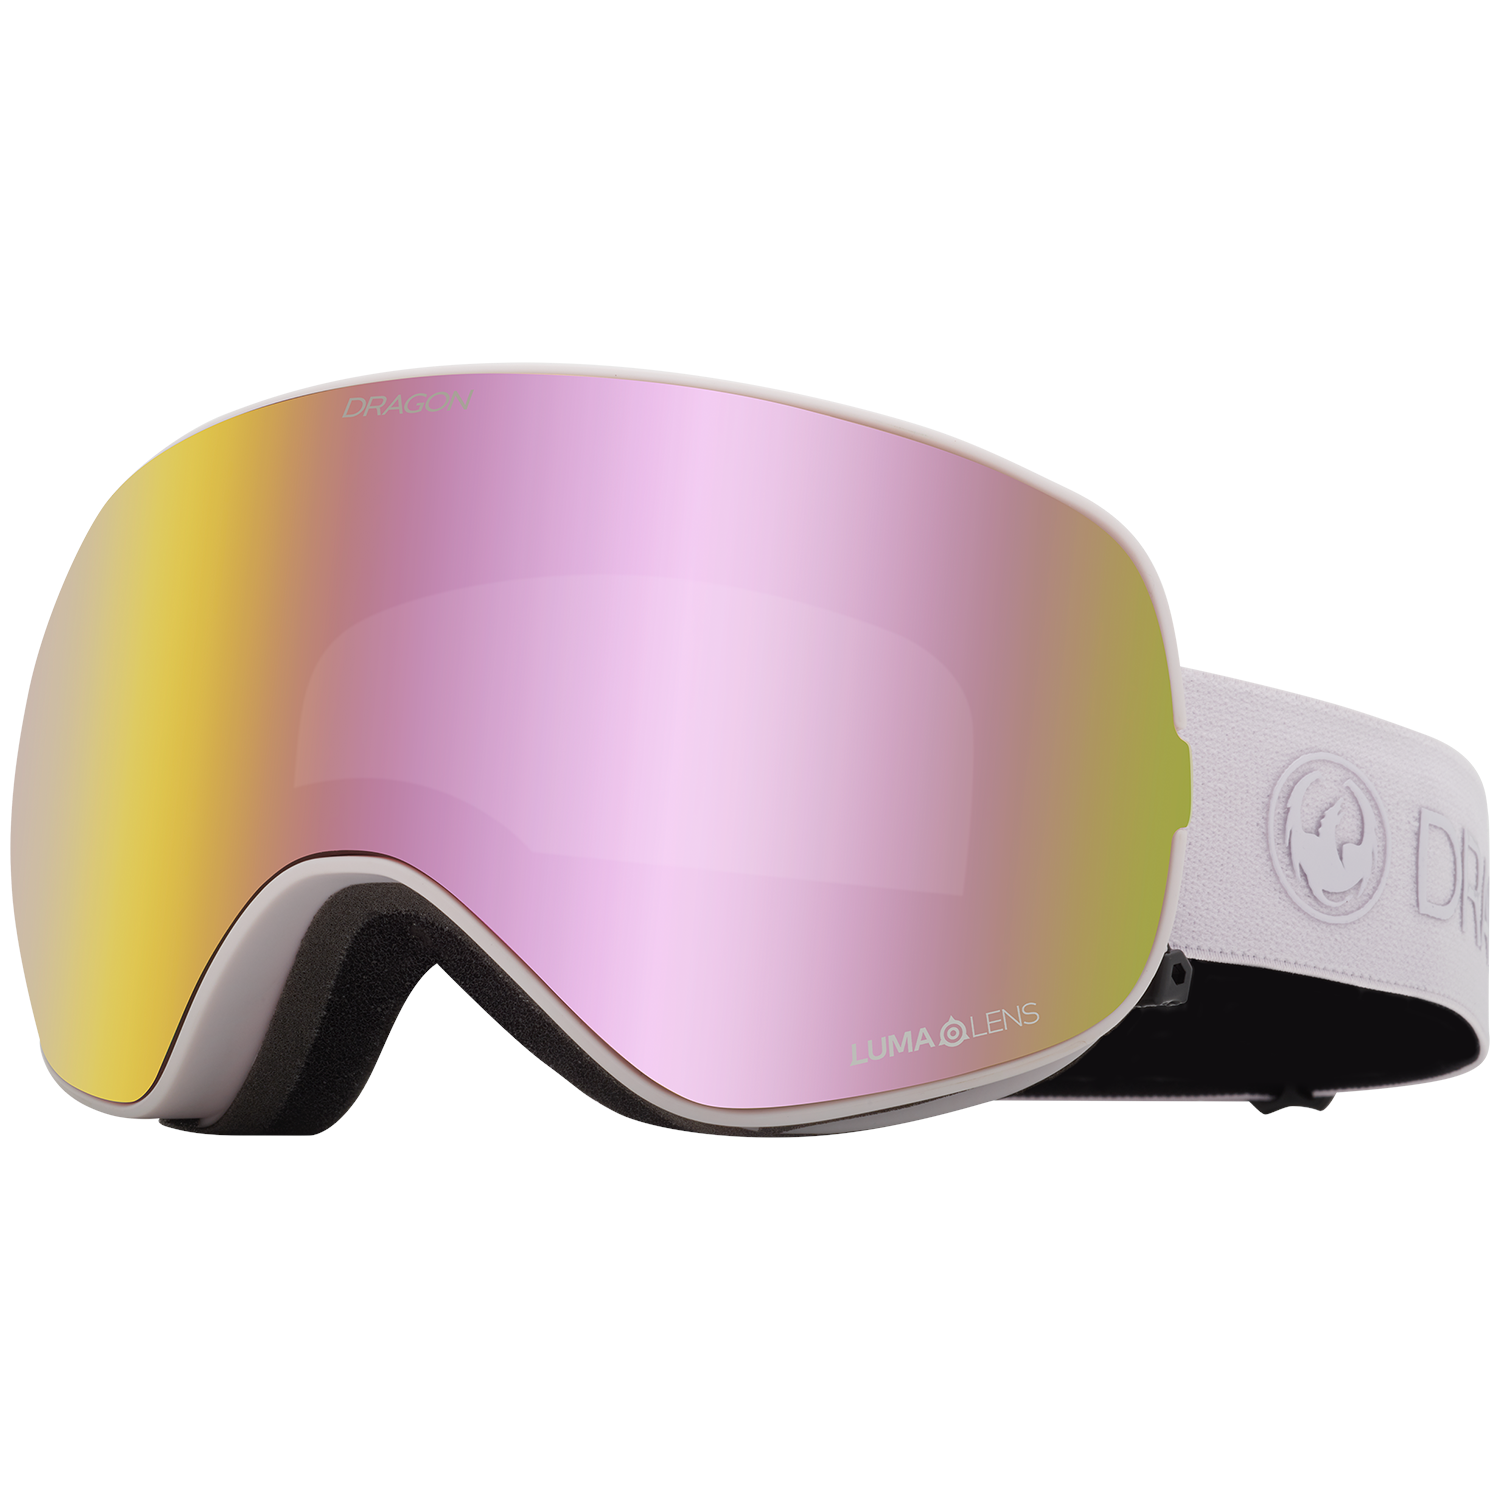 Лыжные очки Dragon X2s, сиреневый